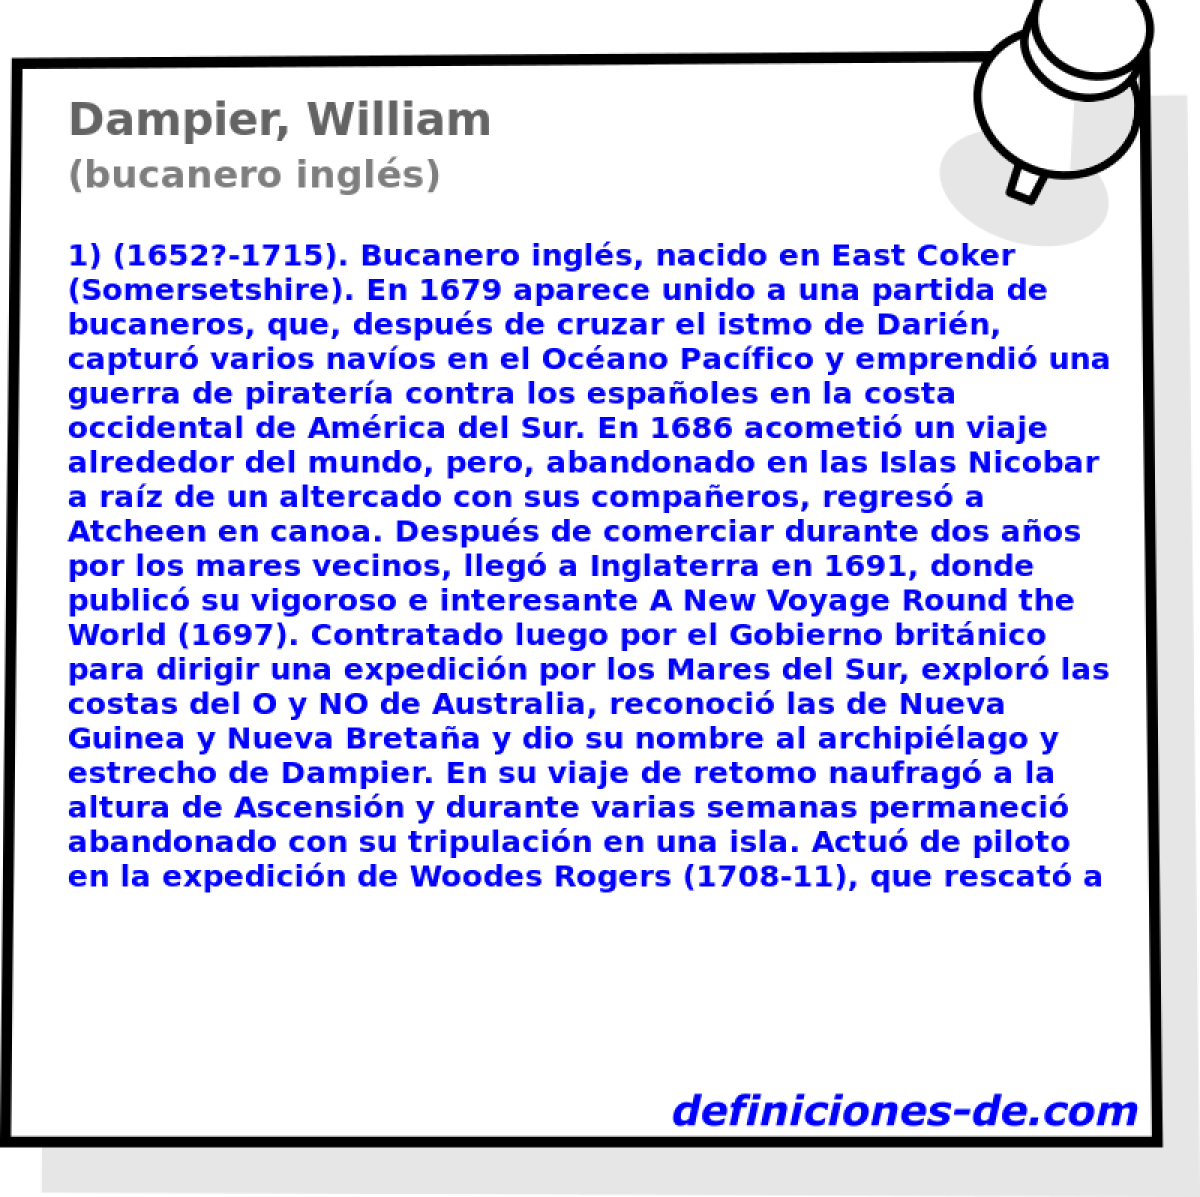 Dampier, William (bucanero ingls)